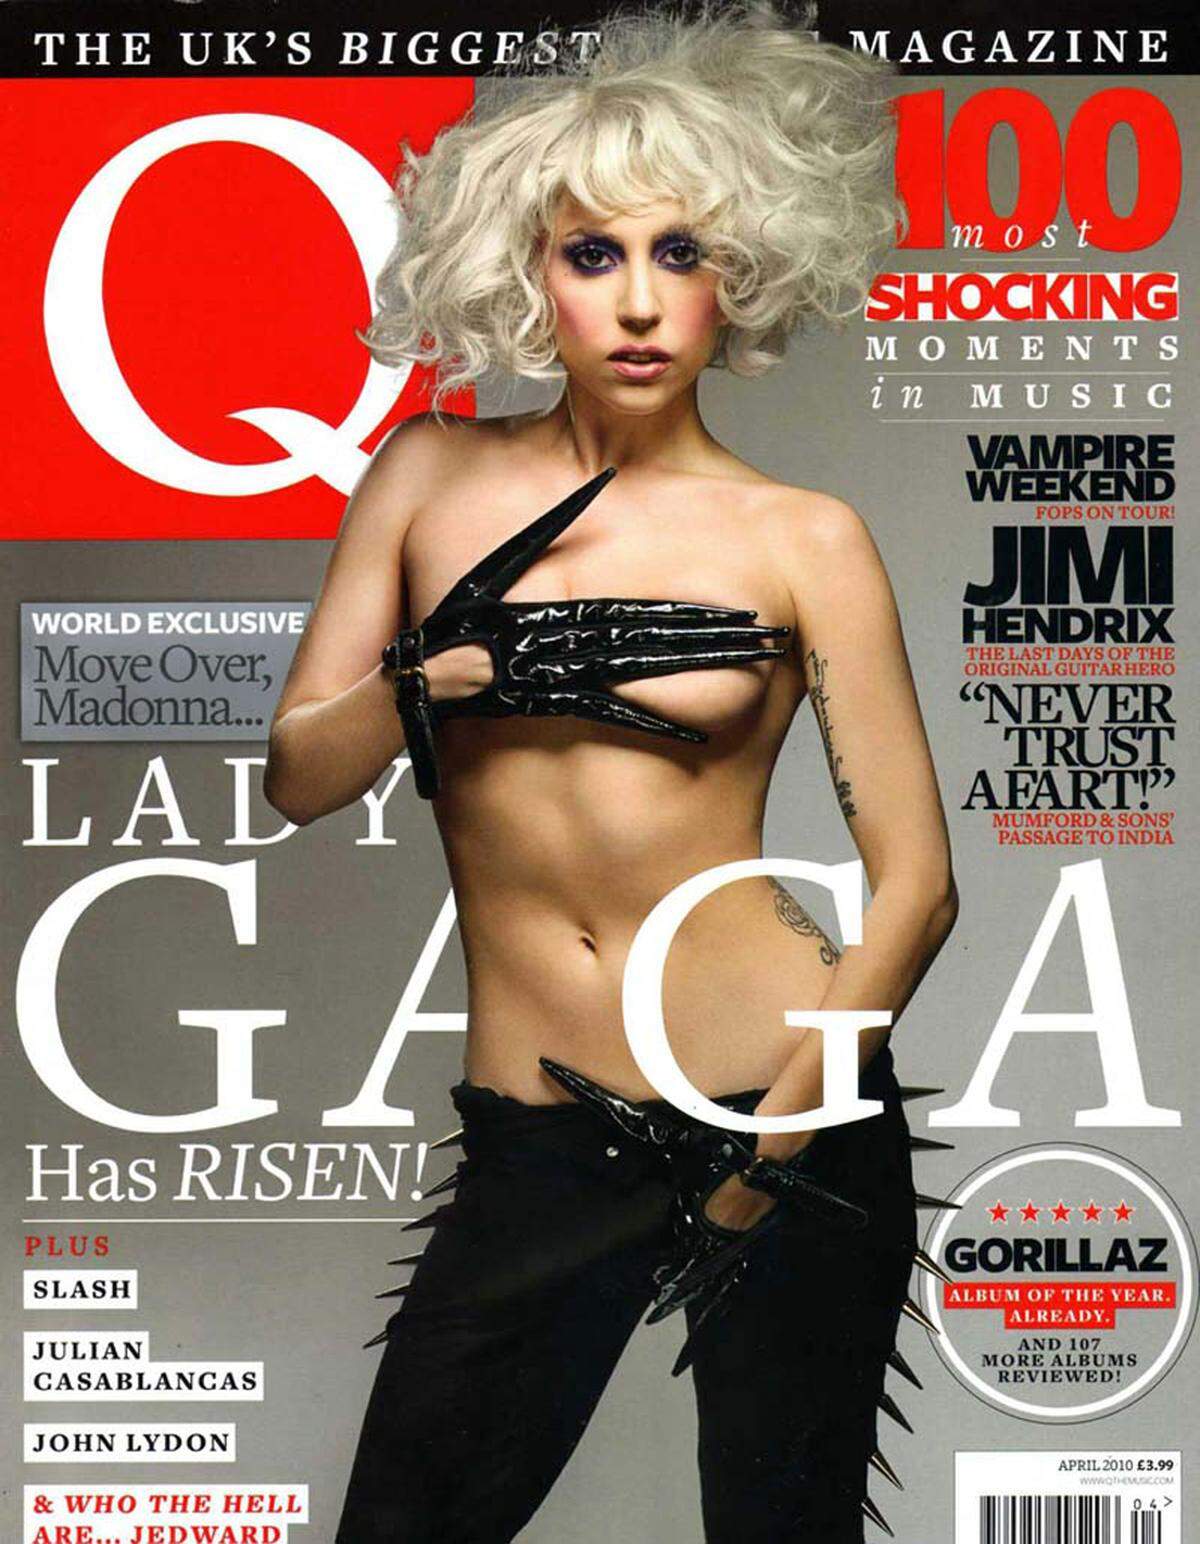 Eine Hommage an den Film "Edward mit den Scherenhänden" hatte Lady Gaga wohl auf dem Cover des G-Magazins vor. Zu viel nackte Haut im Brustbereich sowie eine Hand im Schritt waren für einige jedoch zu viel des Guten. Das Titelbild wurde ebenfalls von vielen Zeitungsverkäufern verdeckt.